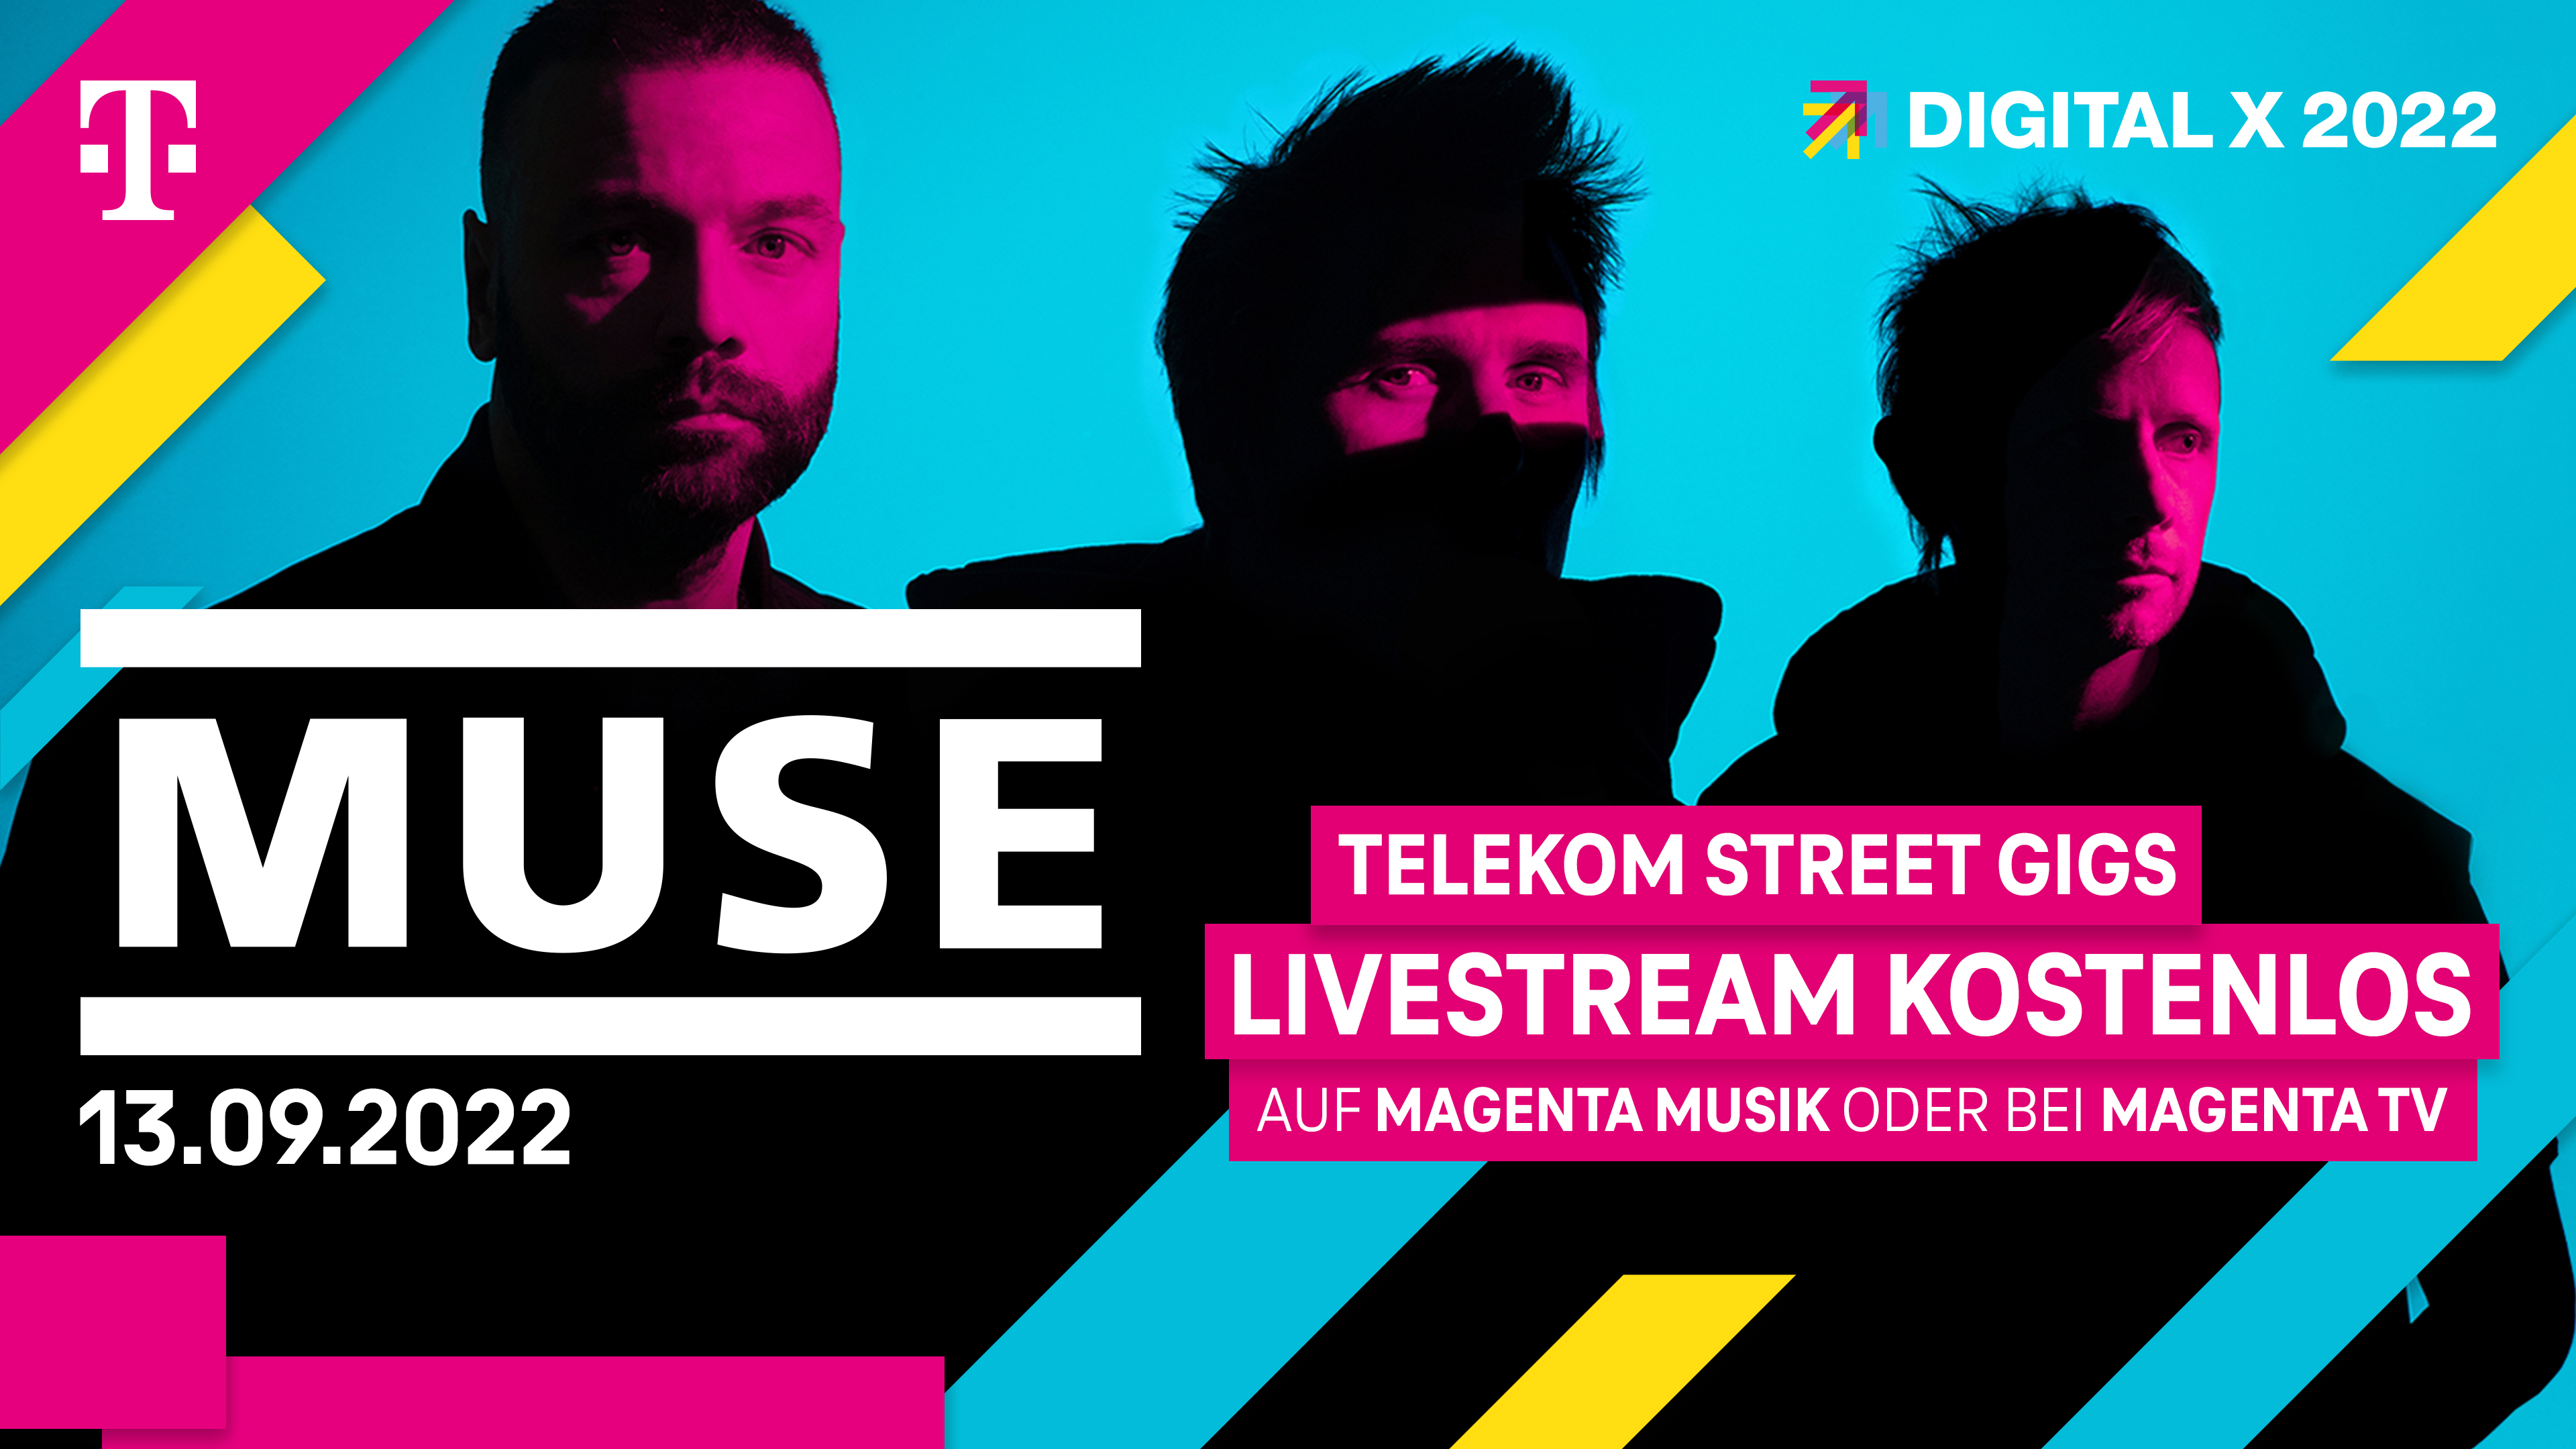 Medieninformation Digital X Telekom bringt Weltstars Muse für exklusives Konzert ..